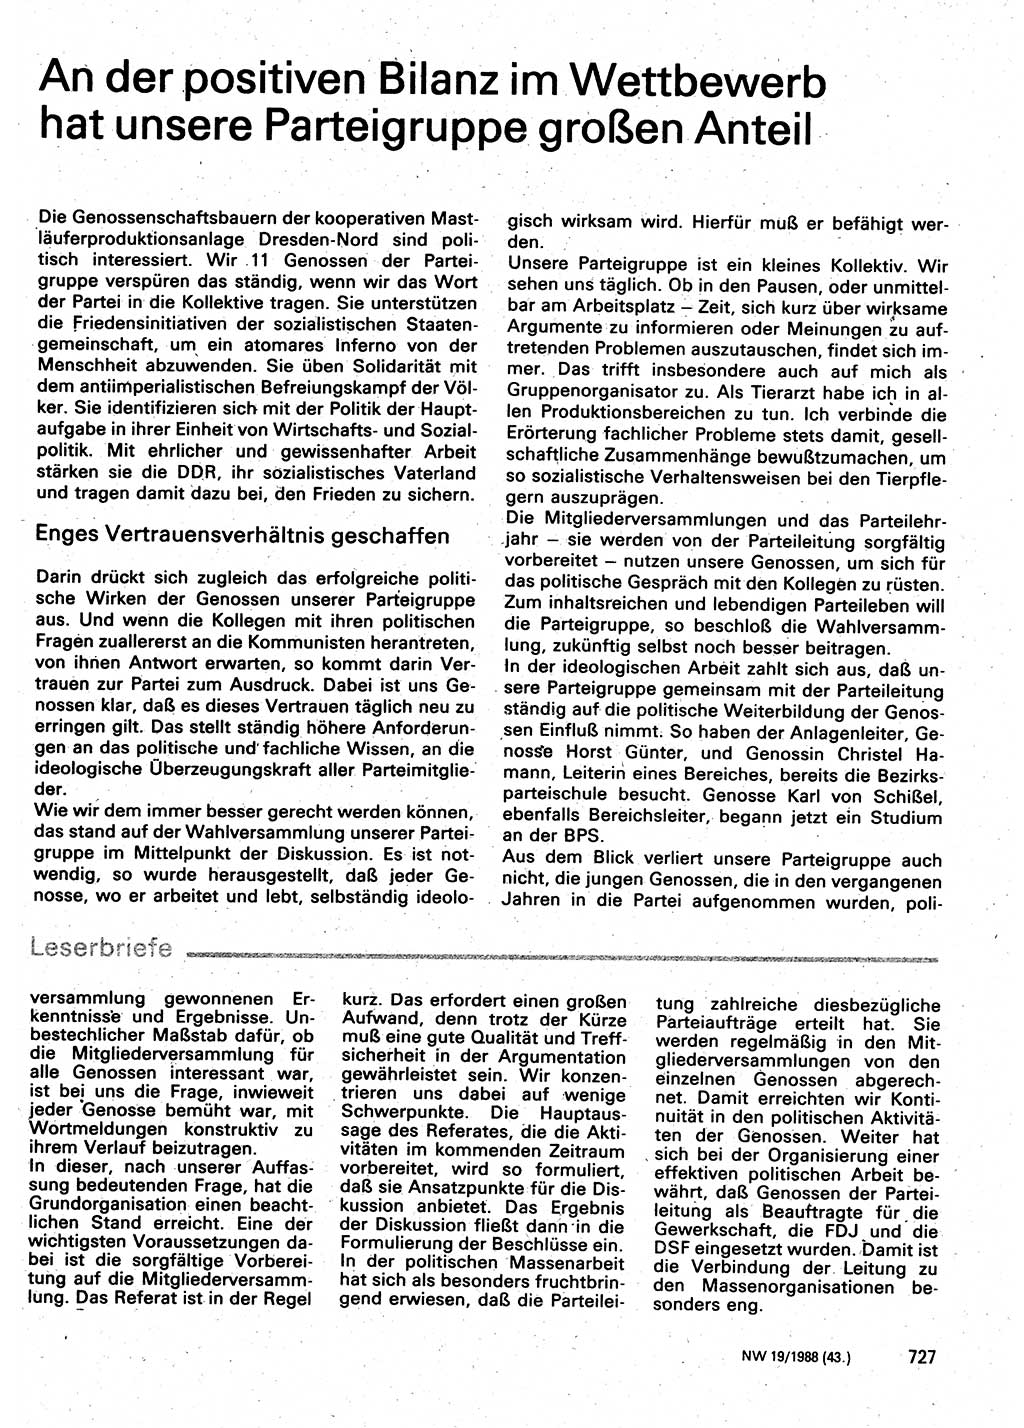 Neuer Weg (NW), Organ des Zentralkomitees (ZK) der SED (Sozialistische Einheitspartei Deutschlands) für Fragen des Parteilebens, 43. Jahrgang [Deutsche Demokratische Republik (DDR)] 1988, Seite 727 (NW ZK SED DDR 1988, S. 727)